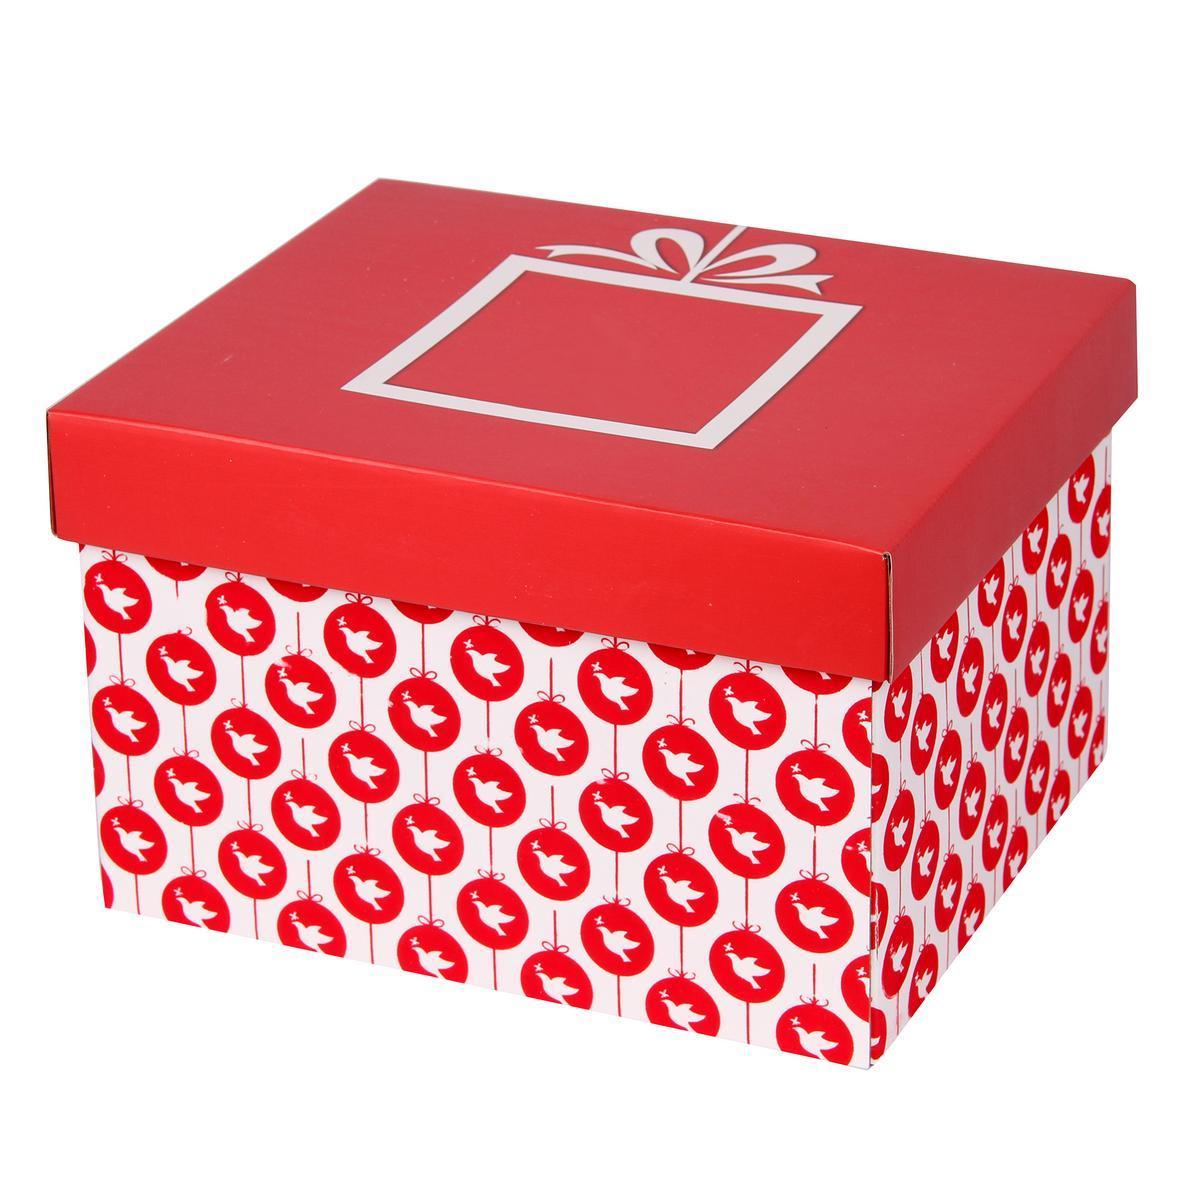 Boîte de rangement pour boules - Carton - 25 x 31 x H 20 cm - Rouge et blanc